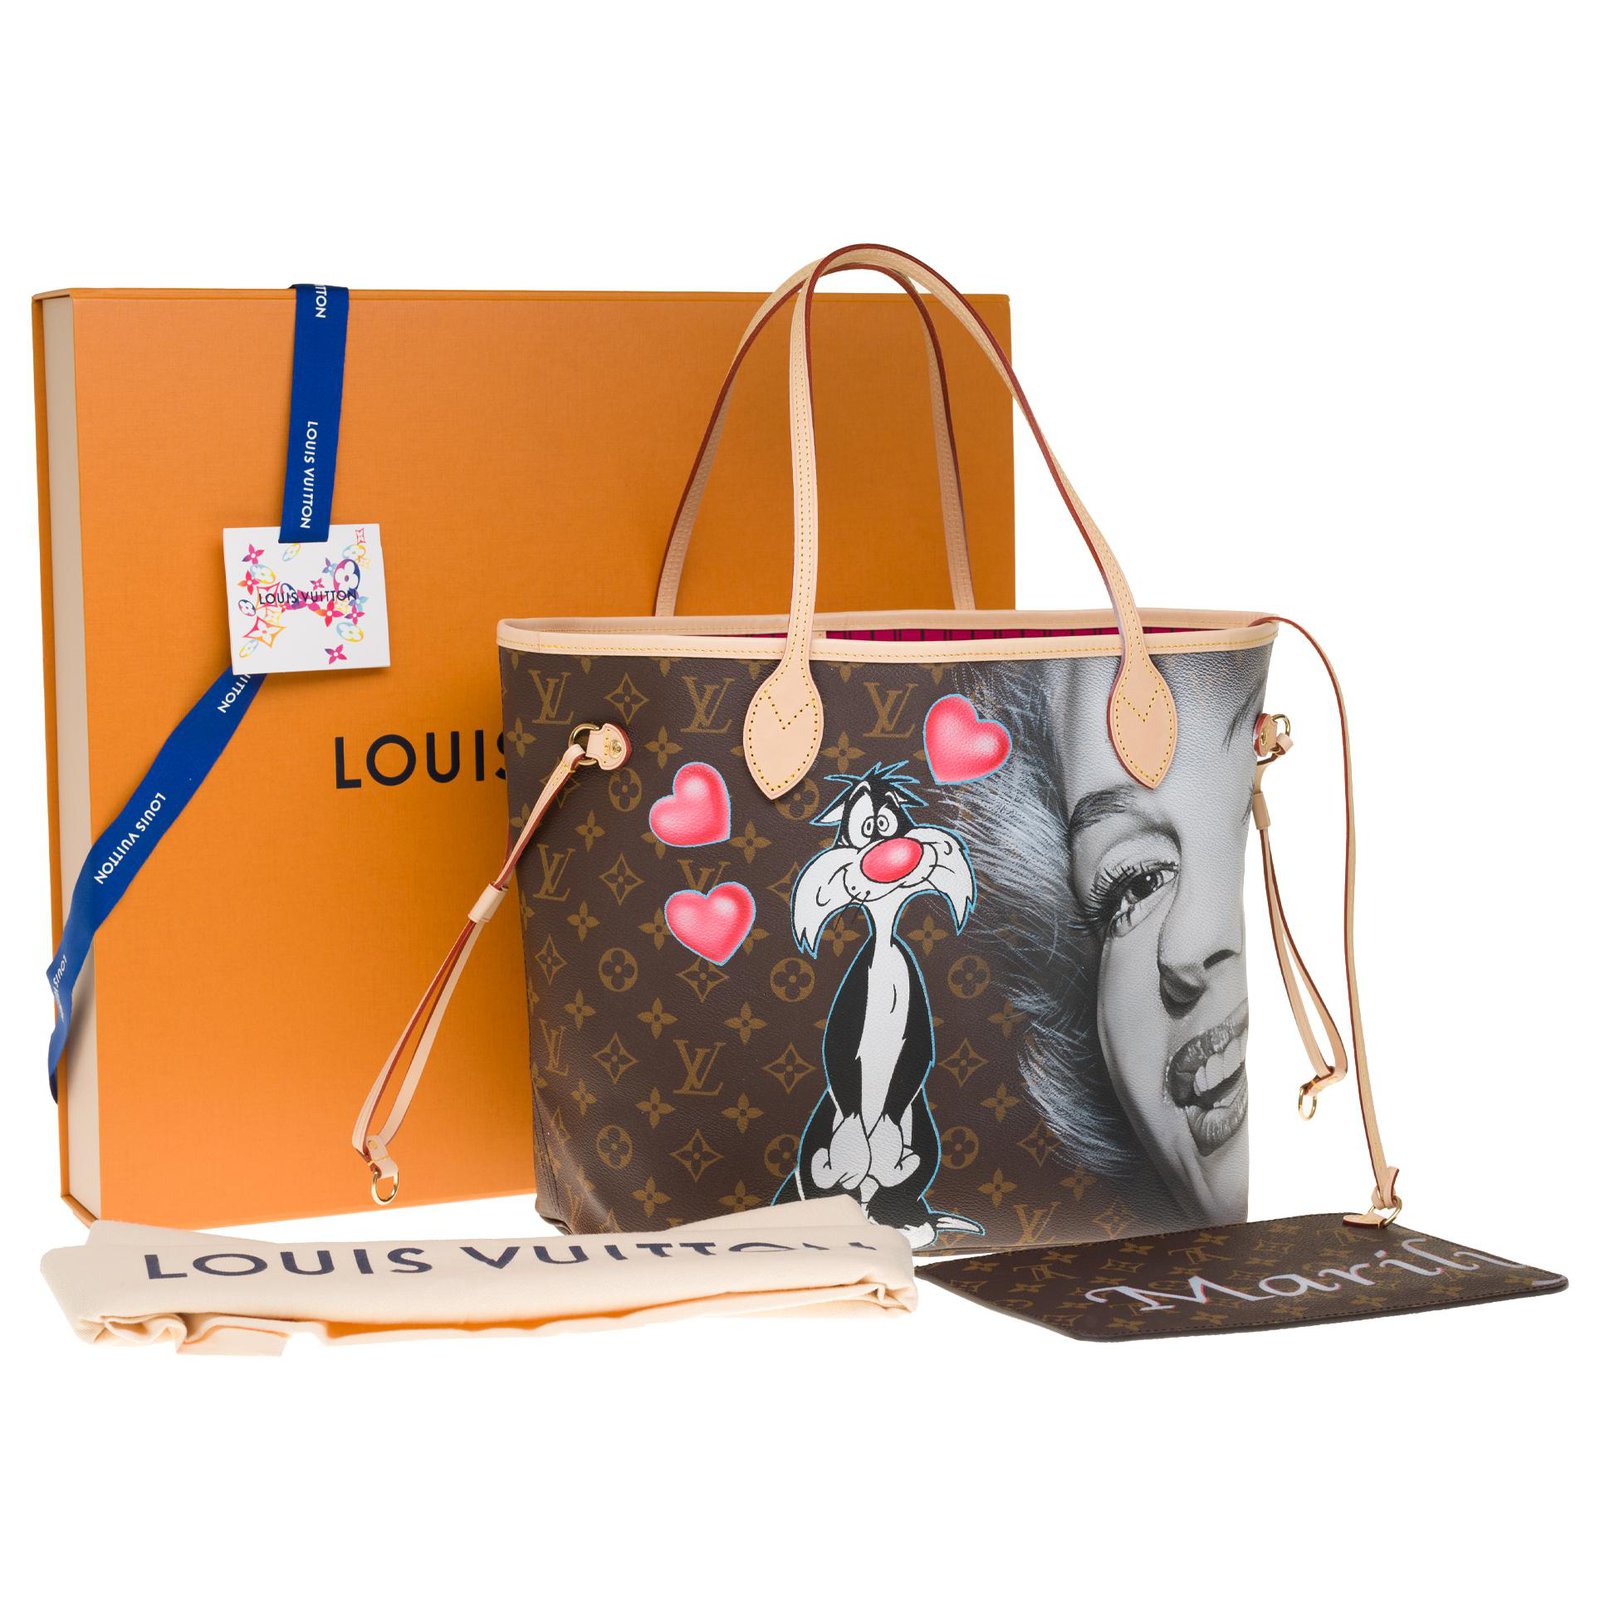 Splendid Louis Vuitton Neverfull MM bag in custom monogram canvas